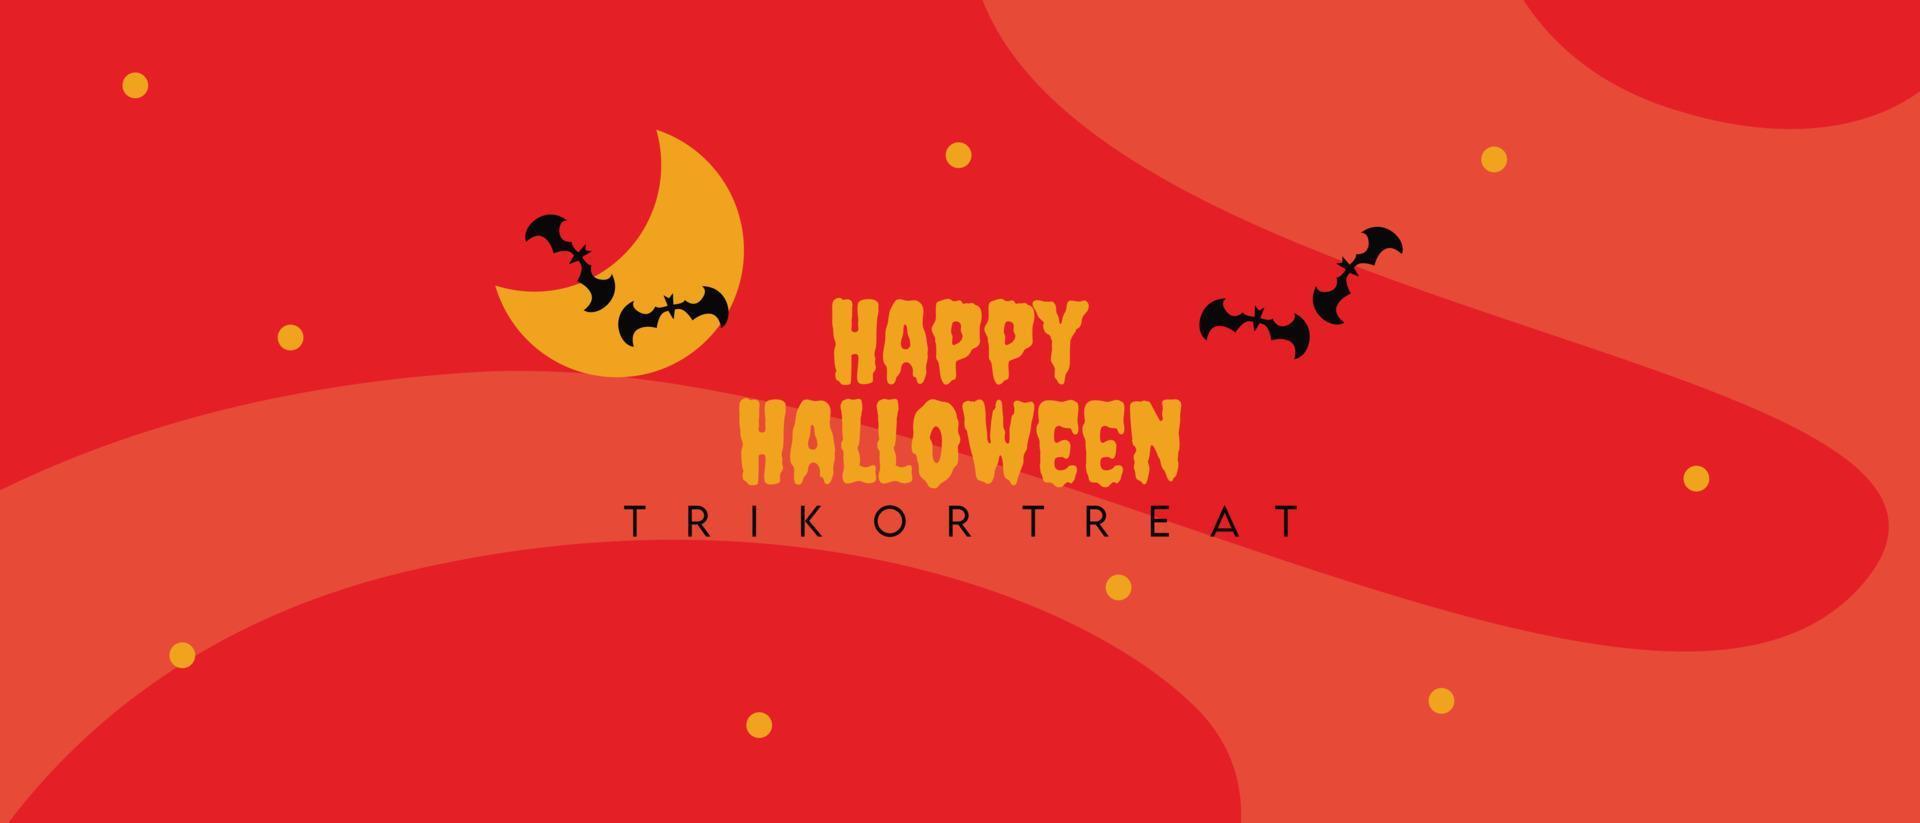 fundo de texto feliz dia das bruxas adequado para banner de halloween ou relacionado ao tema de halloween vetor